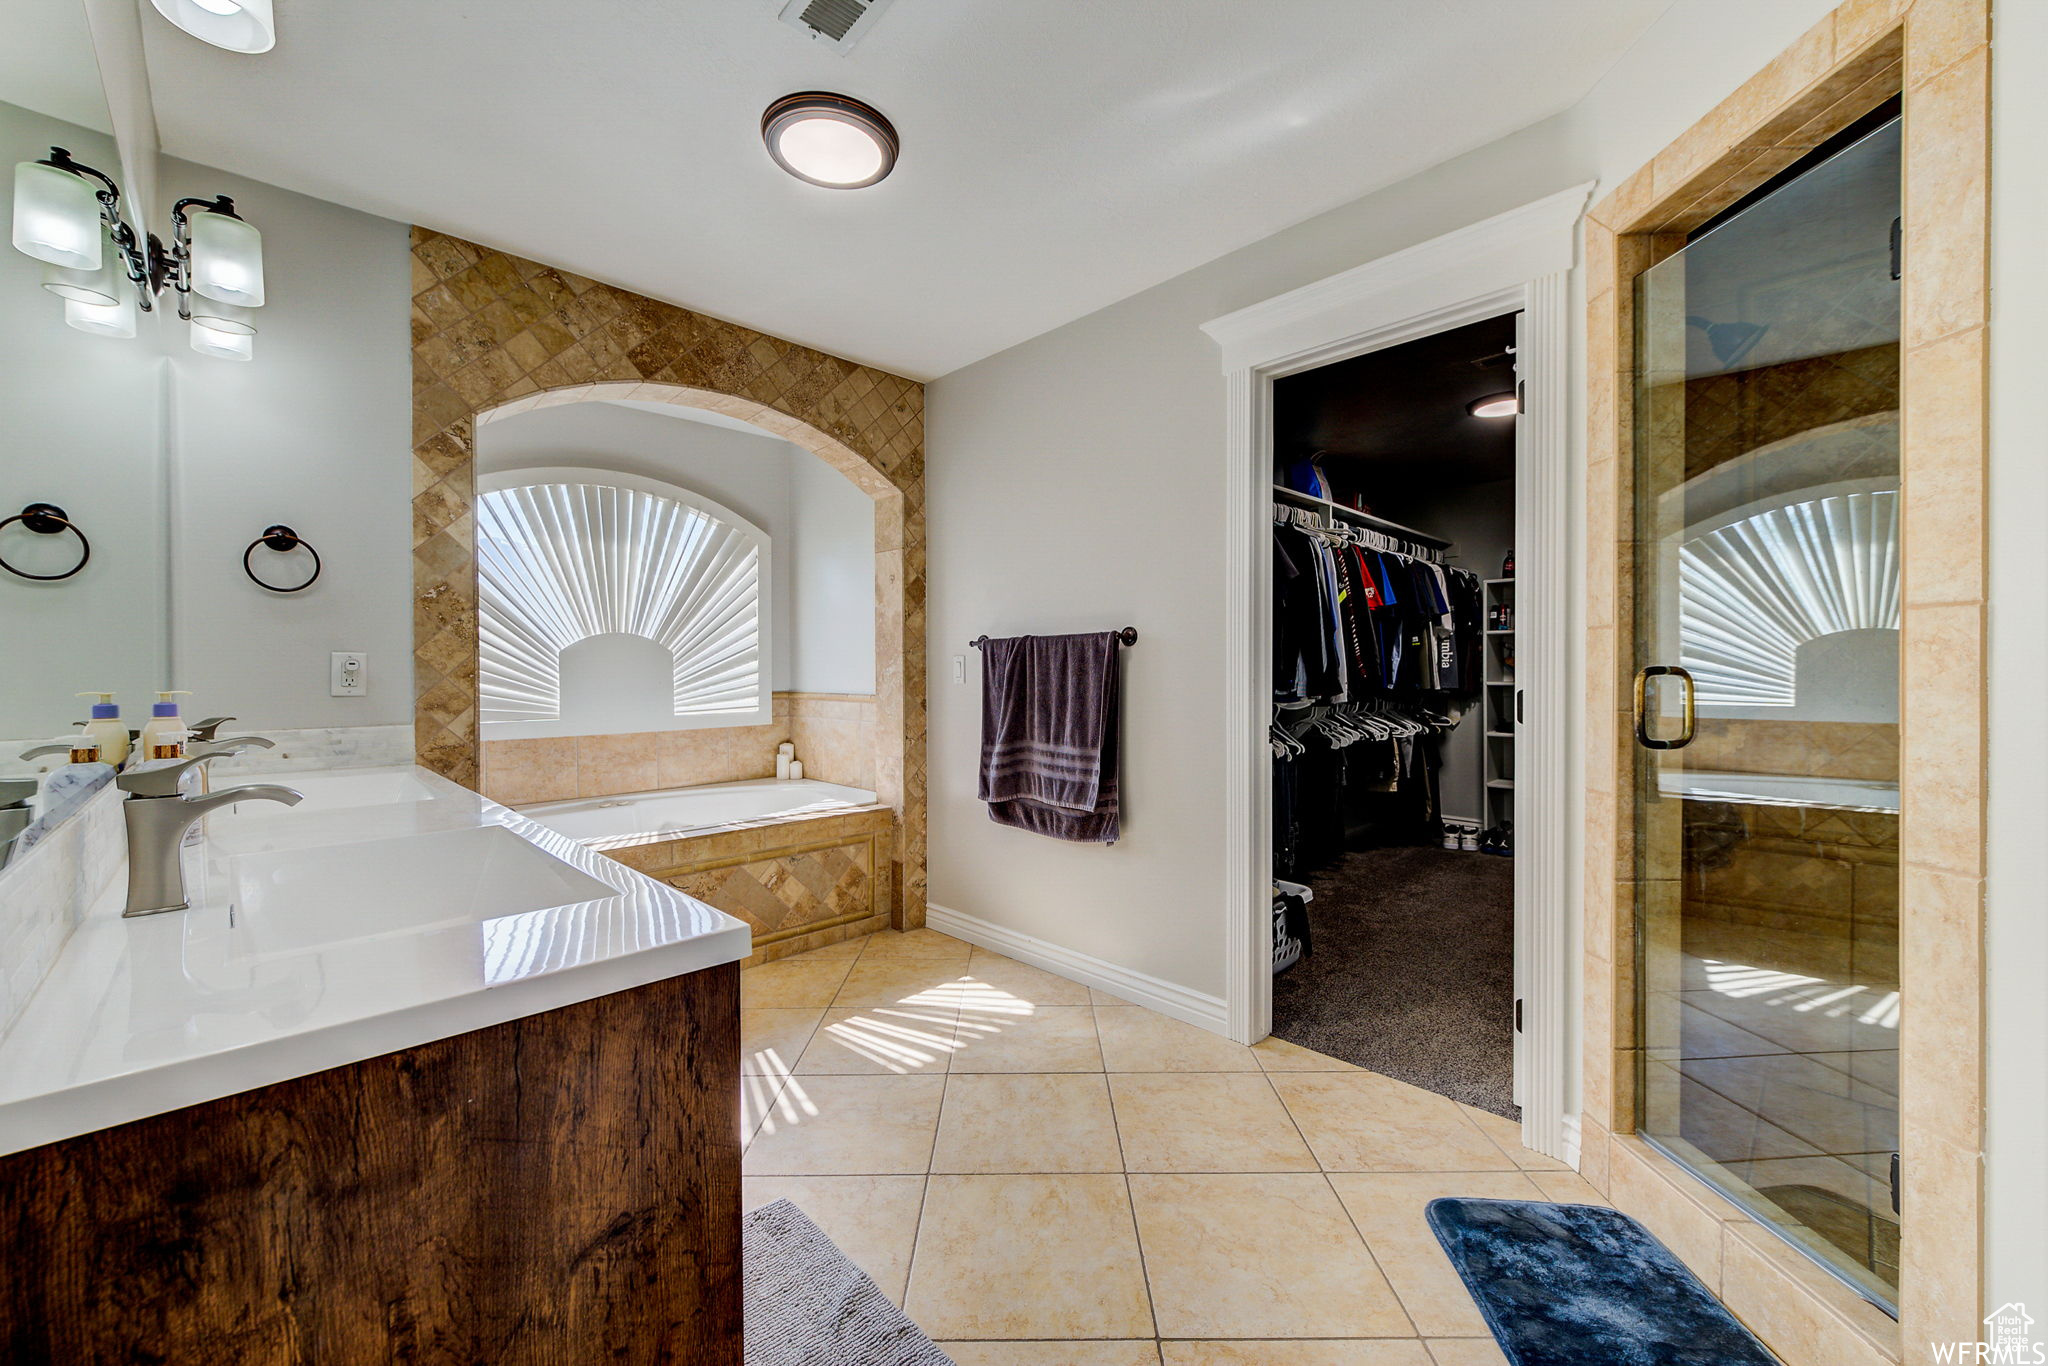 Bathroom featuring dual vanity, plus walk in shower, and tile flooring